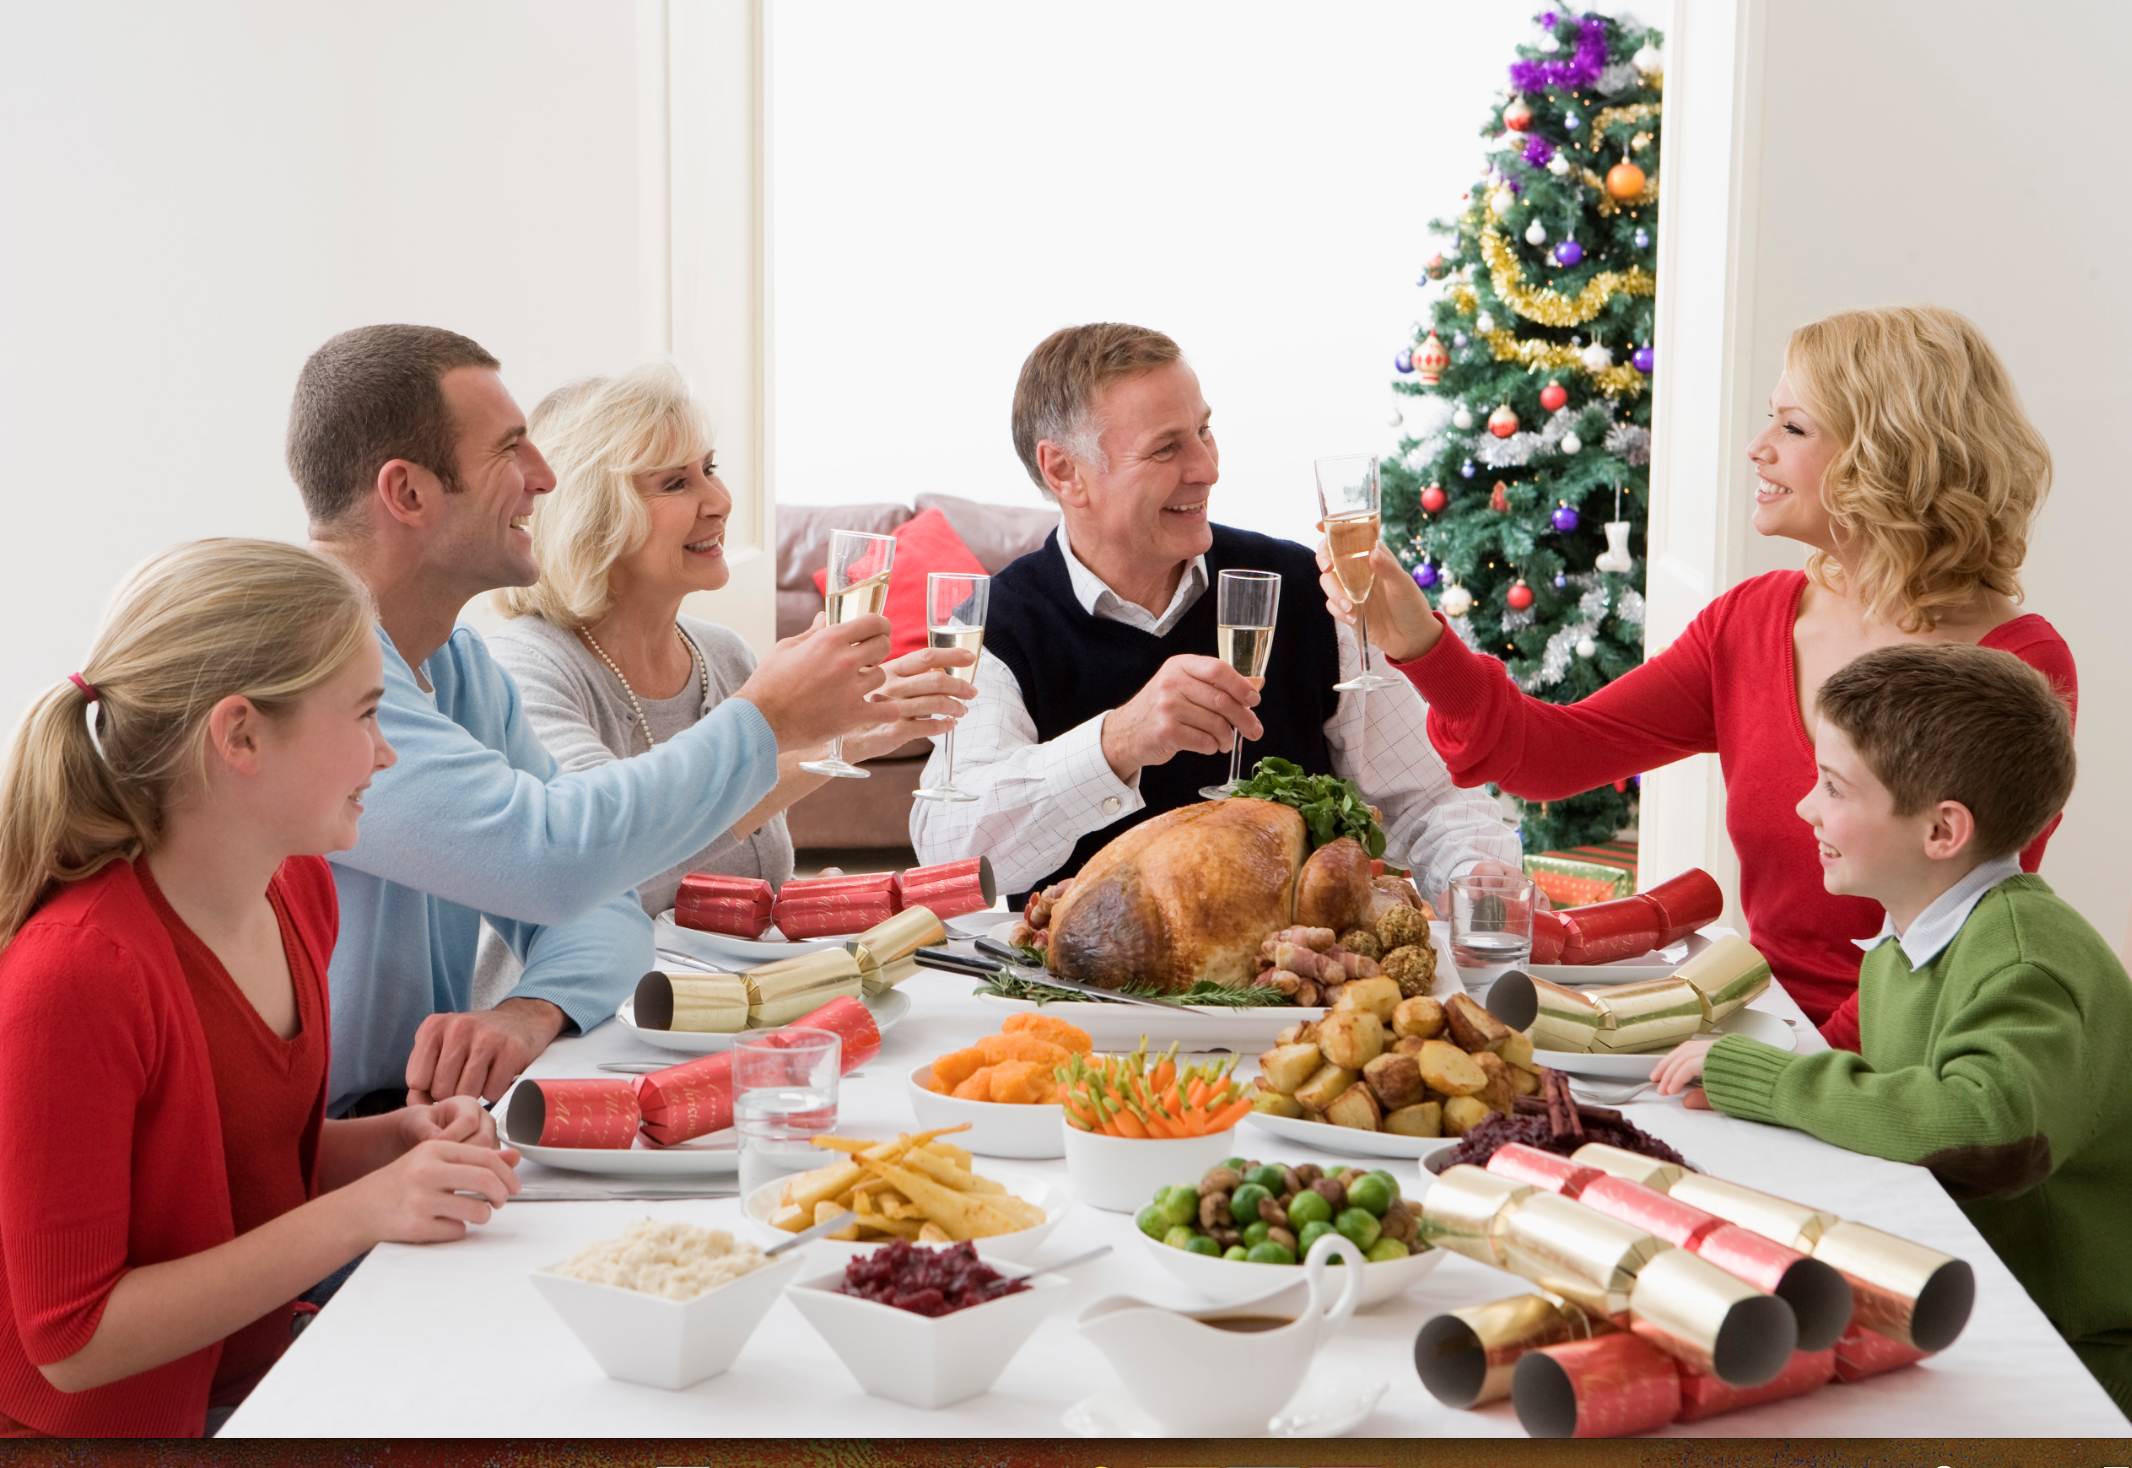 Отмечаем в кругу семьи. Семья за праздничным столом. Люди за праздничным столом. Семейное застолье. Новогодний ужин с семьей.